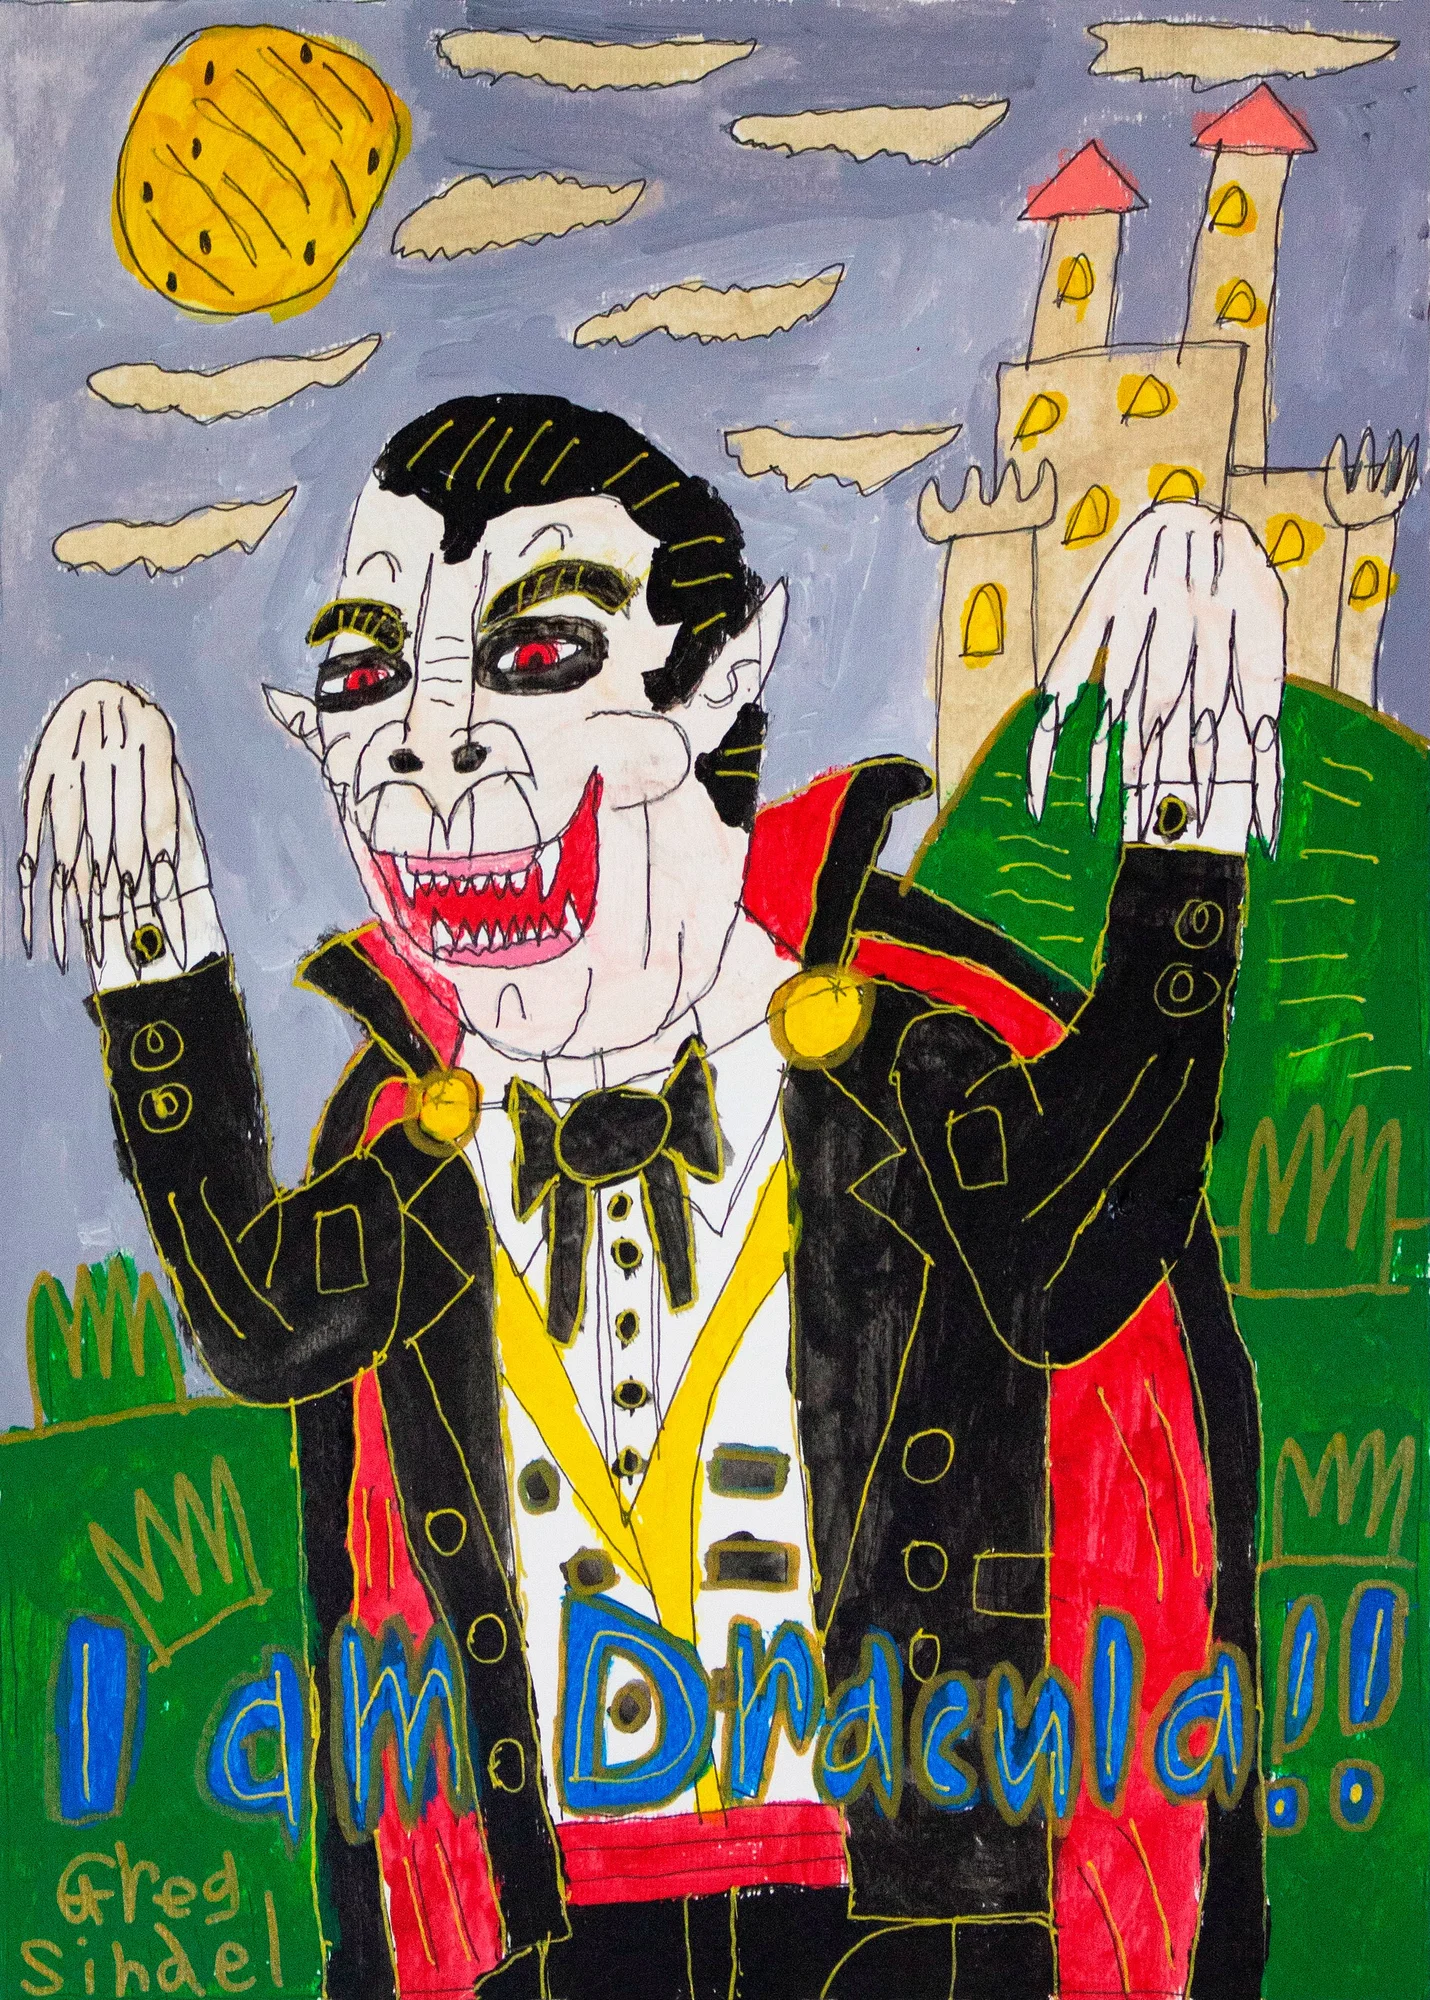 Dracula artwork by Greg Sindel